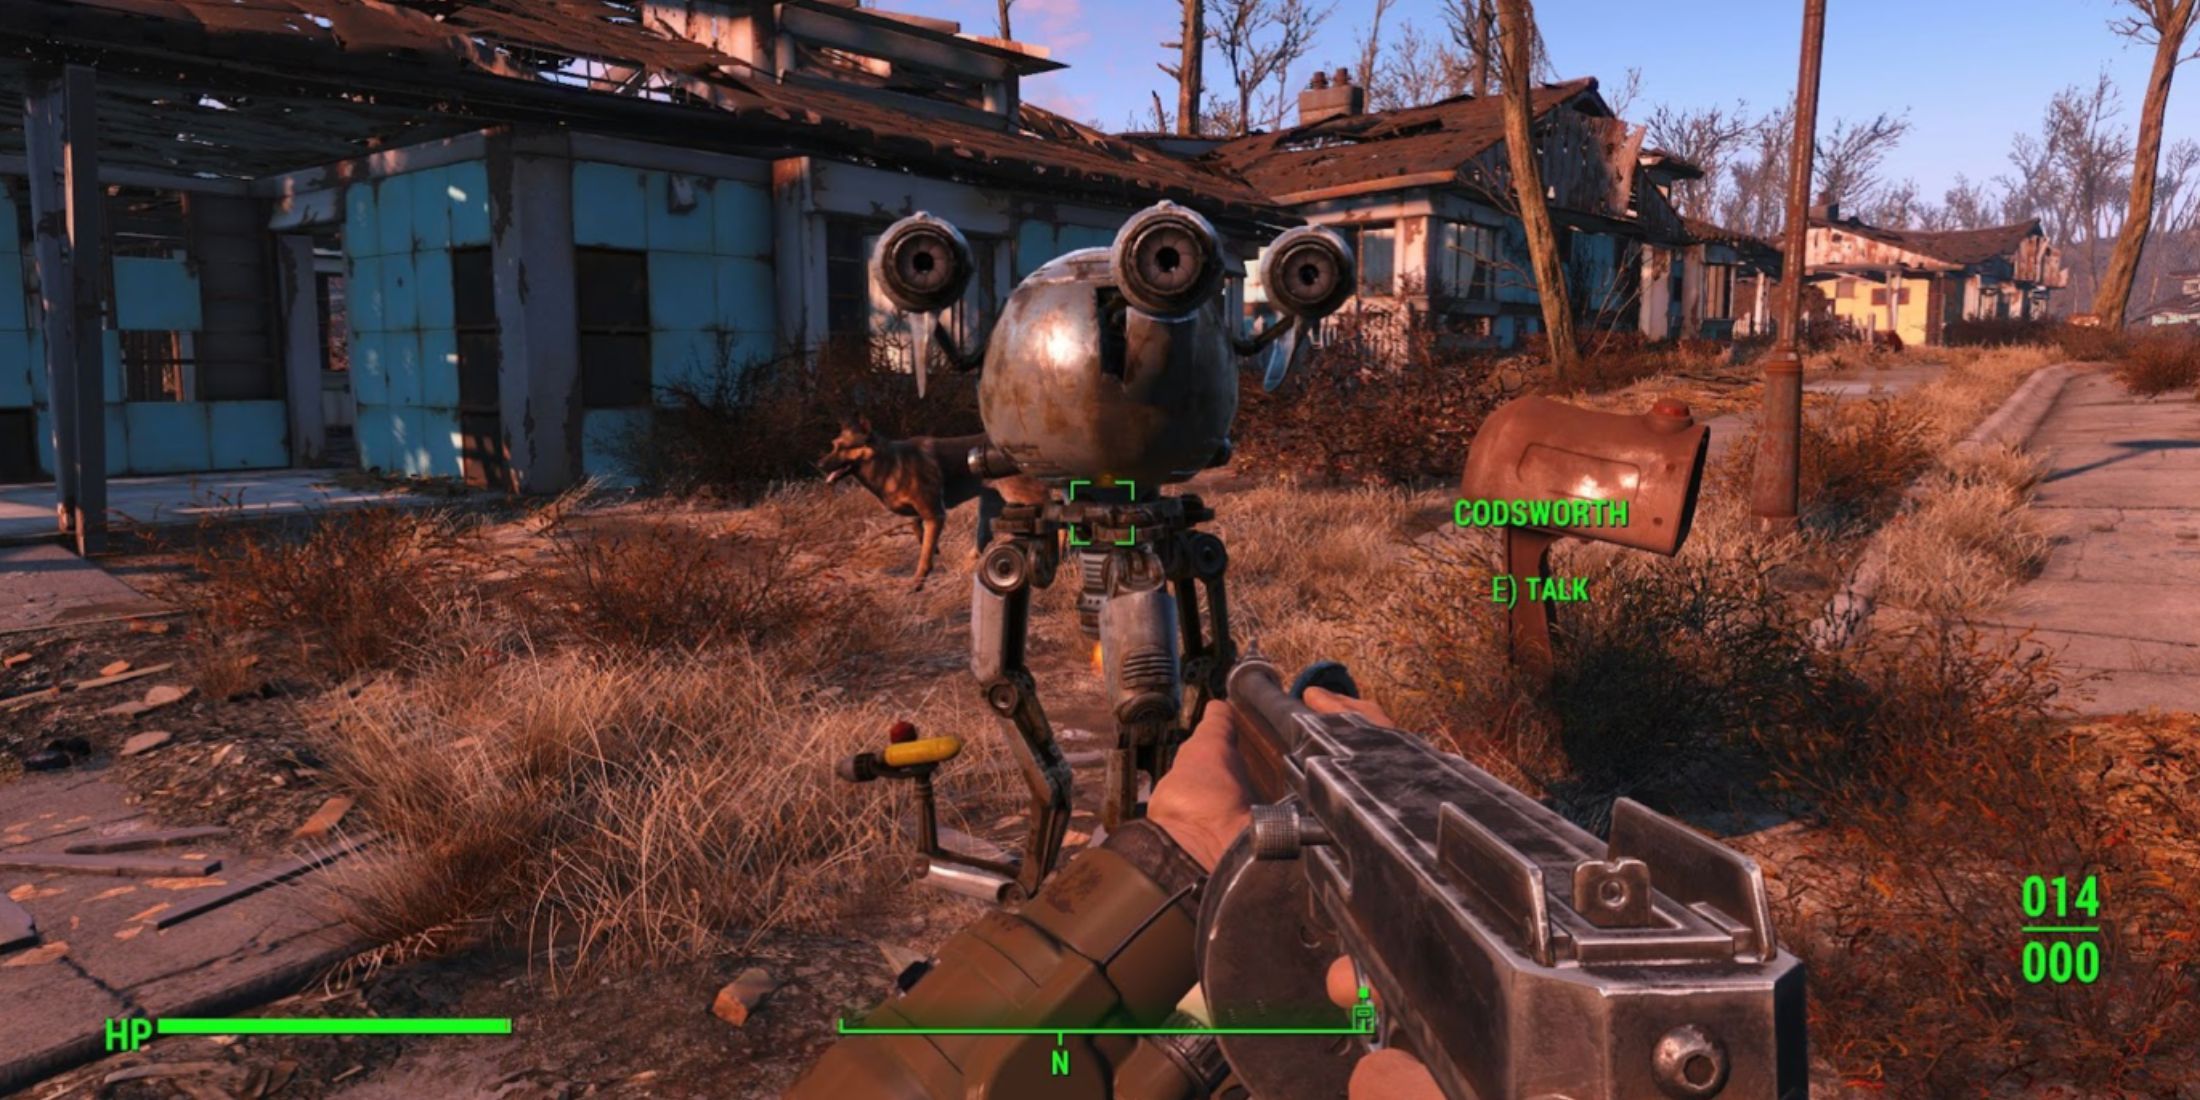 Fallout 4: Список имен Кодсворта